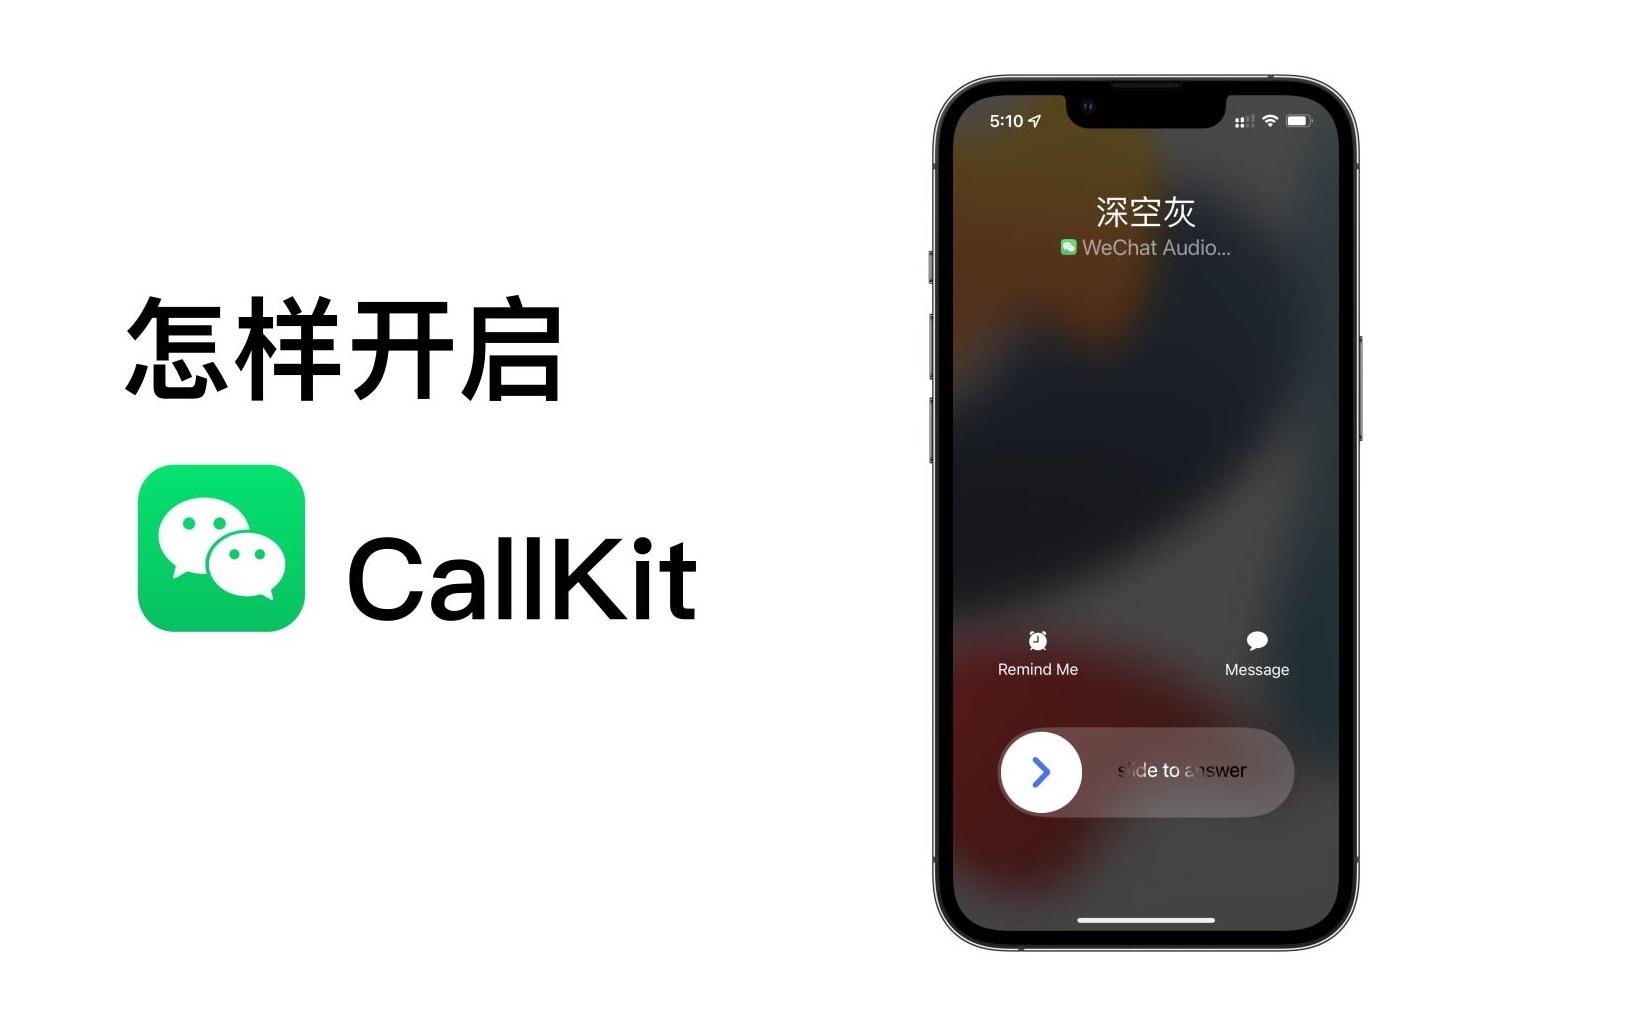 【苹果风】怎样开启微信CallKit，再也不用打开微信接电话